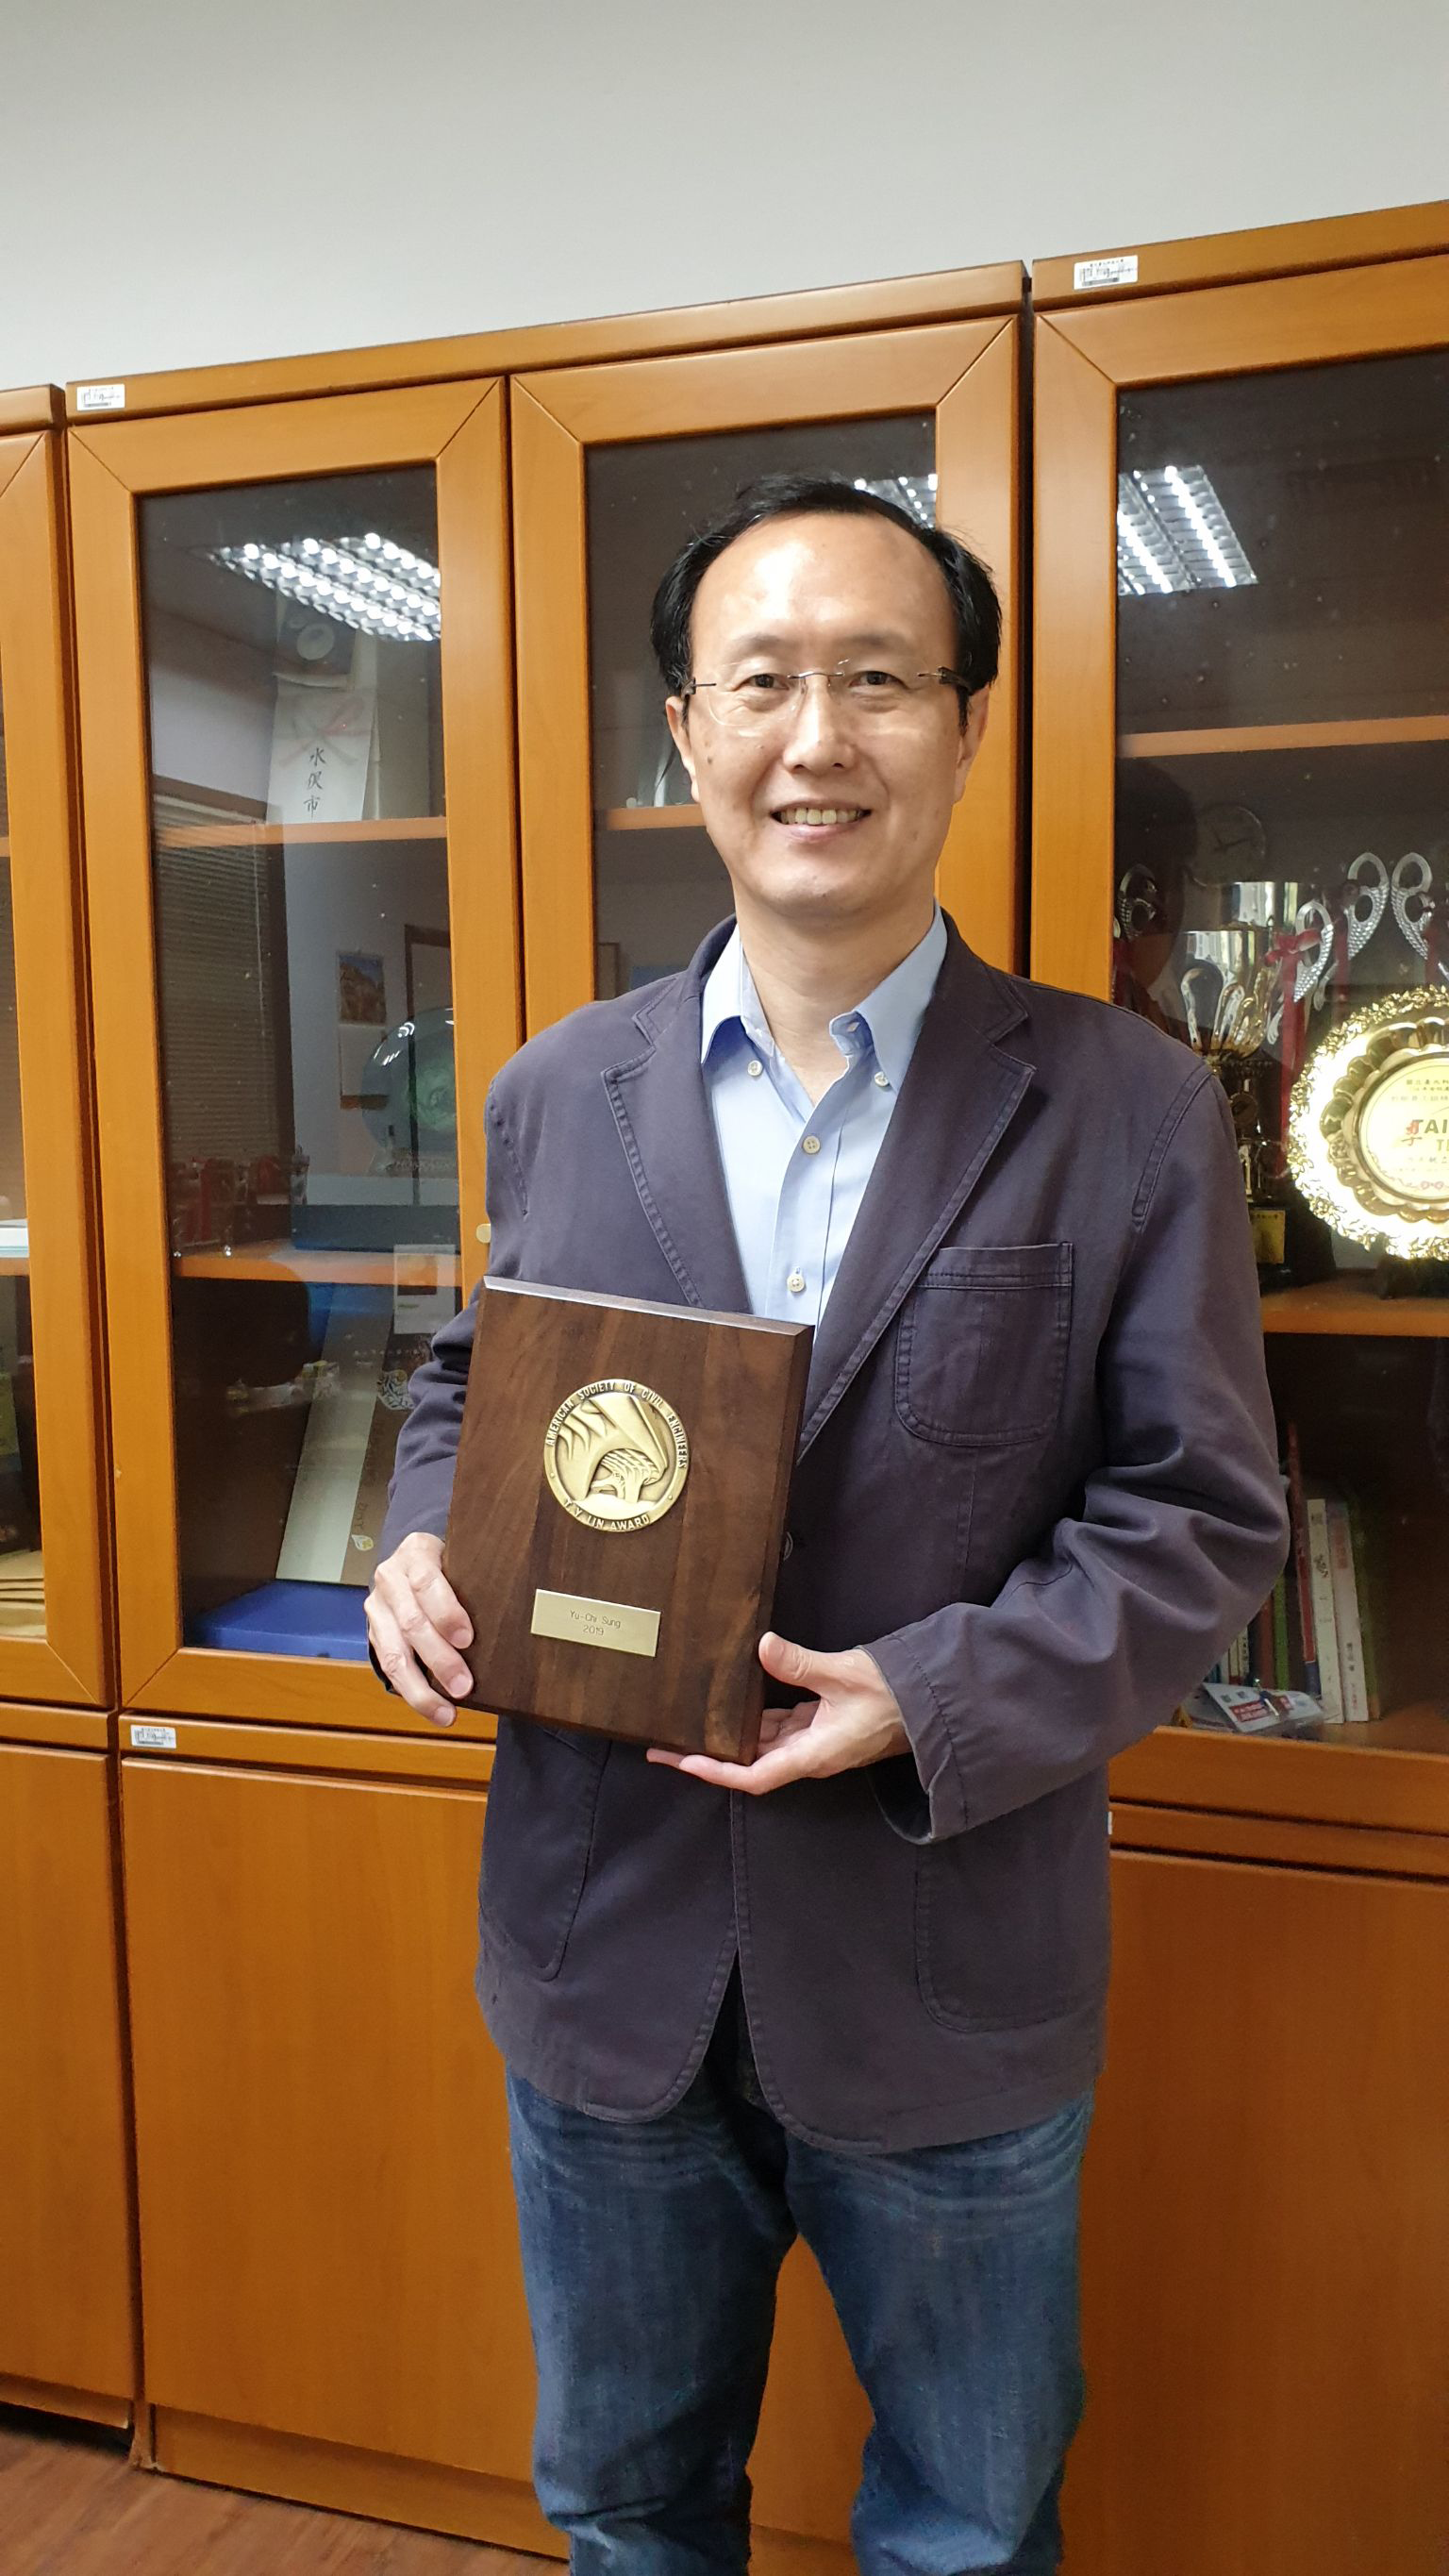 裕祺研究團隊榮獲美國土木工程師學會ASCE T. Y. Lin Award, 2019大獎